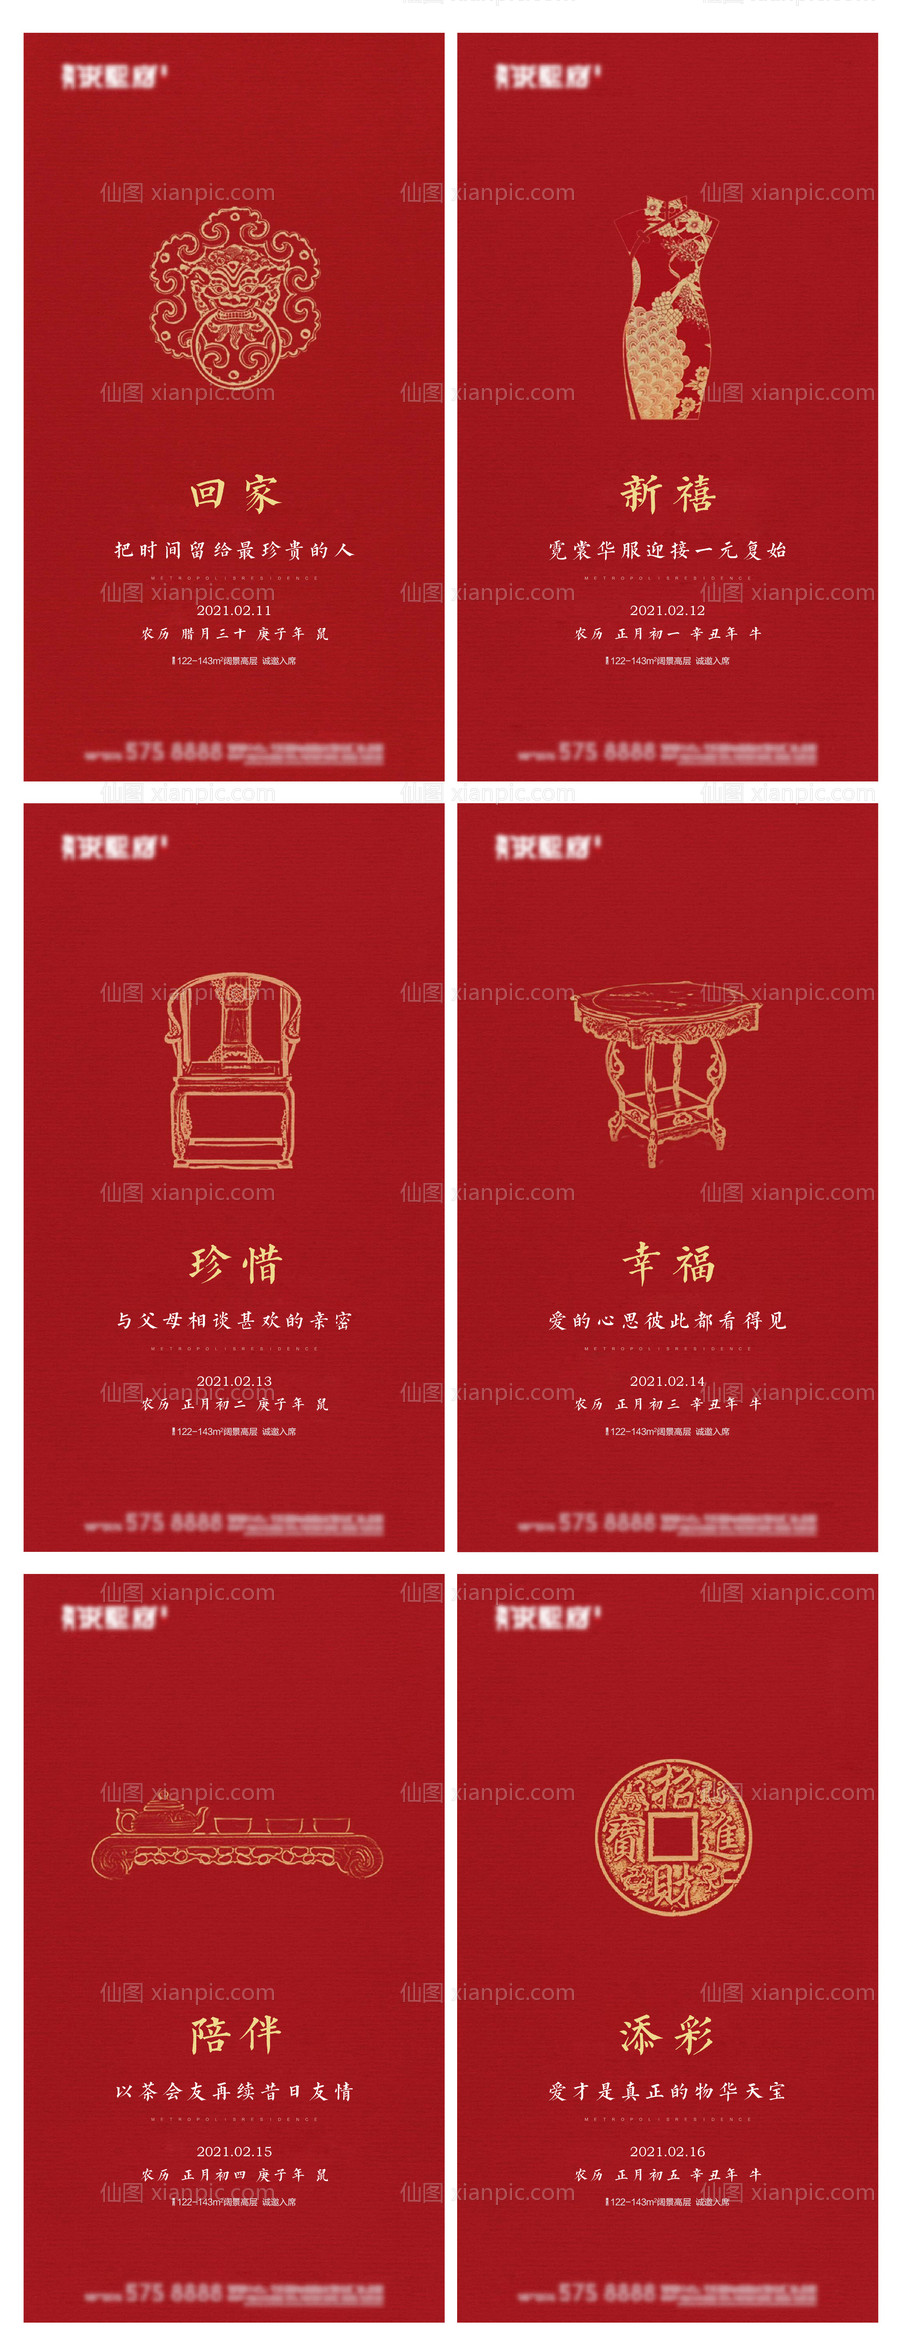 素材乐-春节海报